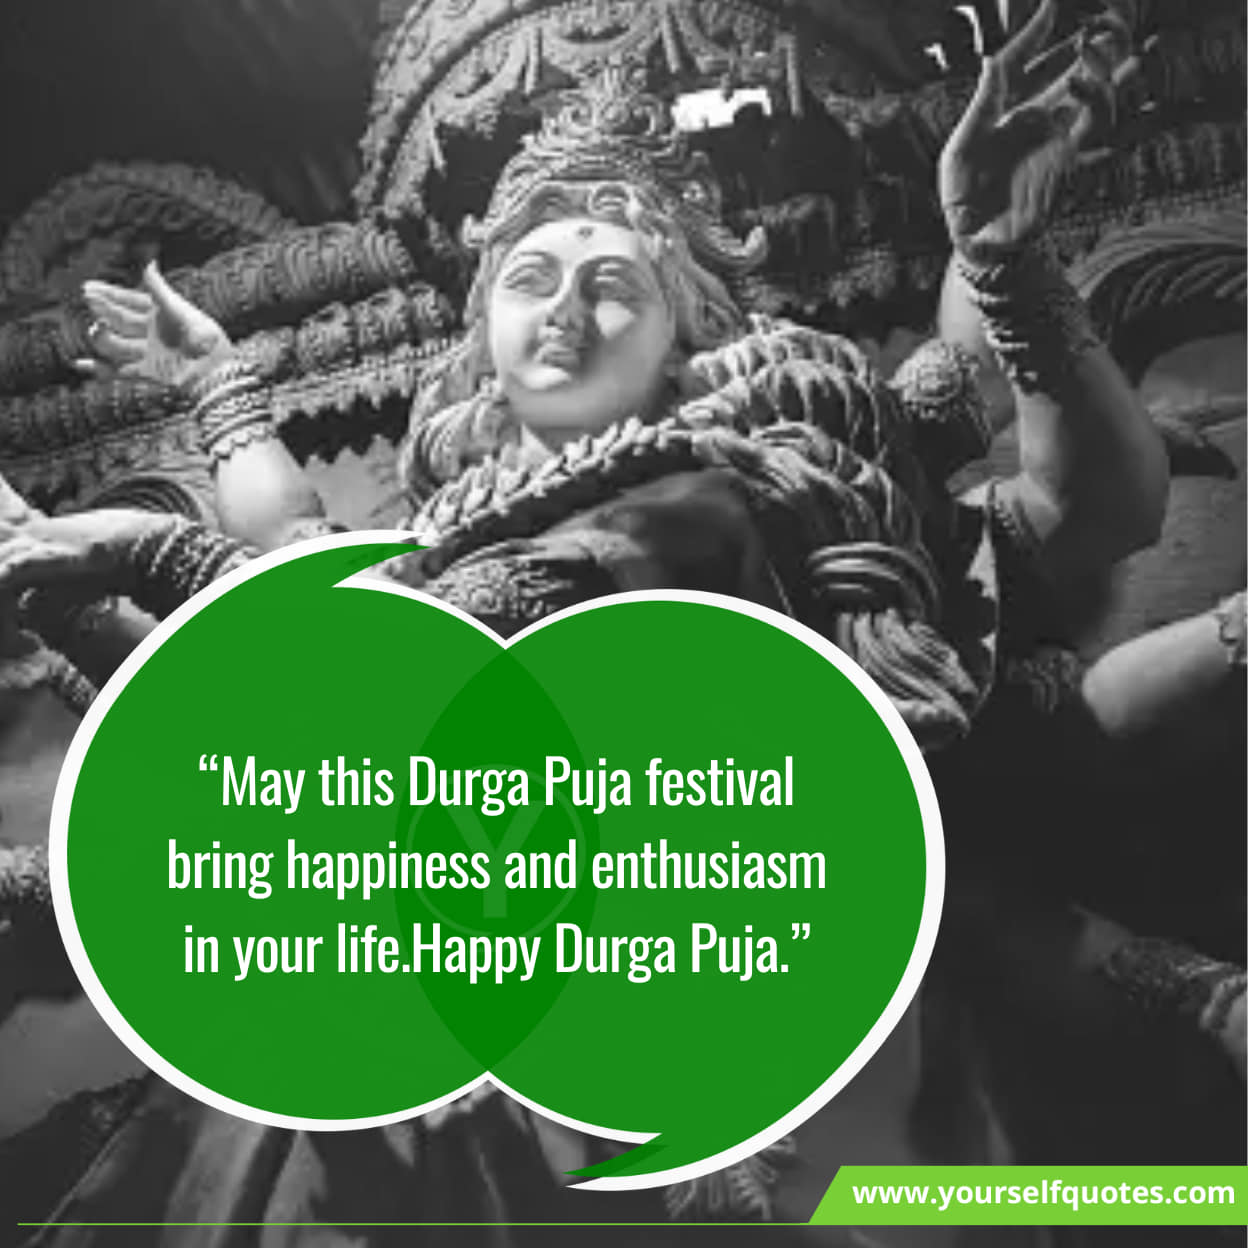 Wishing you a prosperous Durga Puja